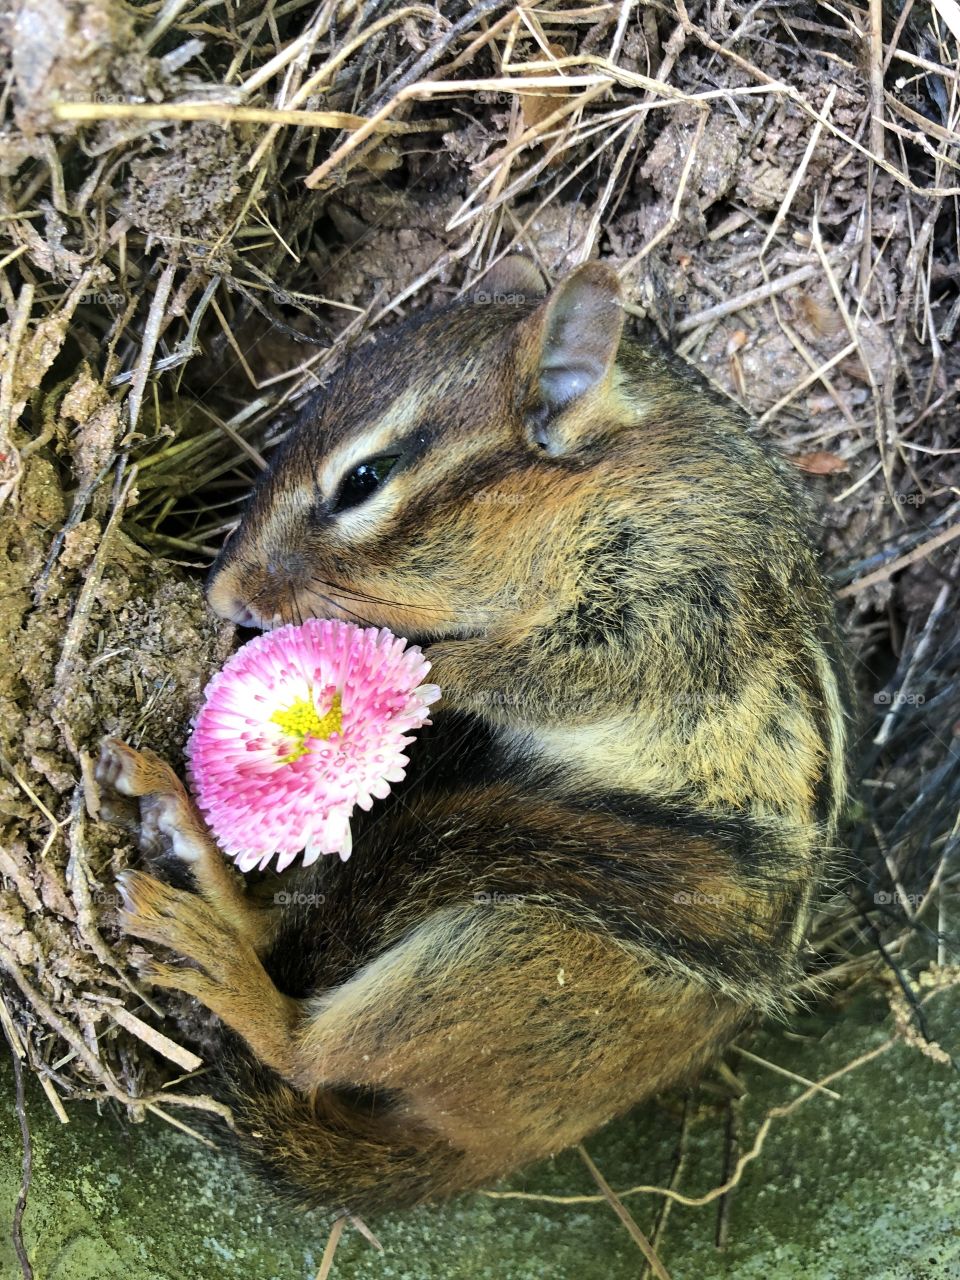 Chipmunk with flower in nest